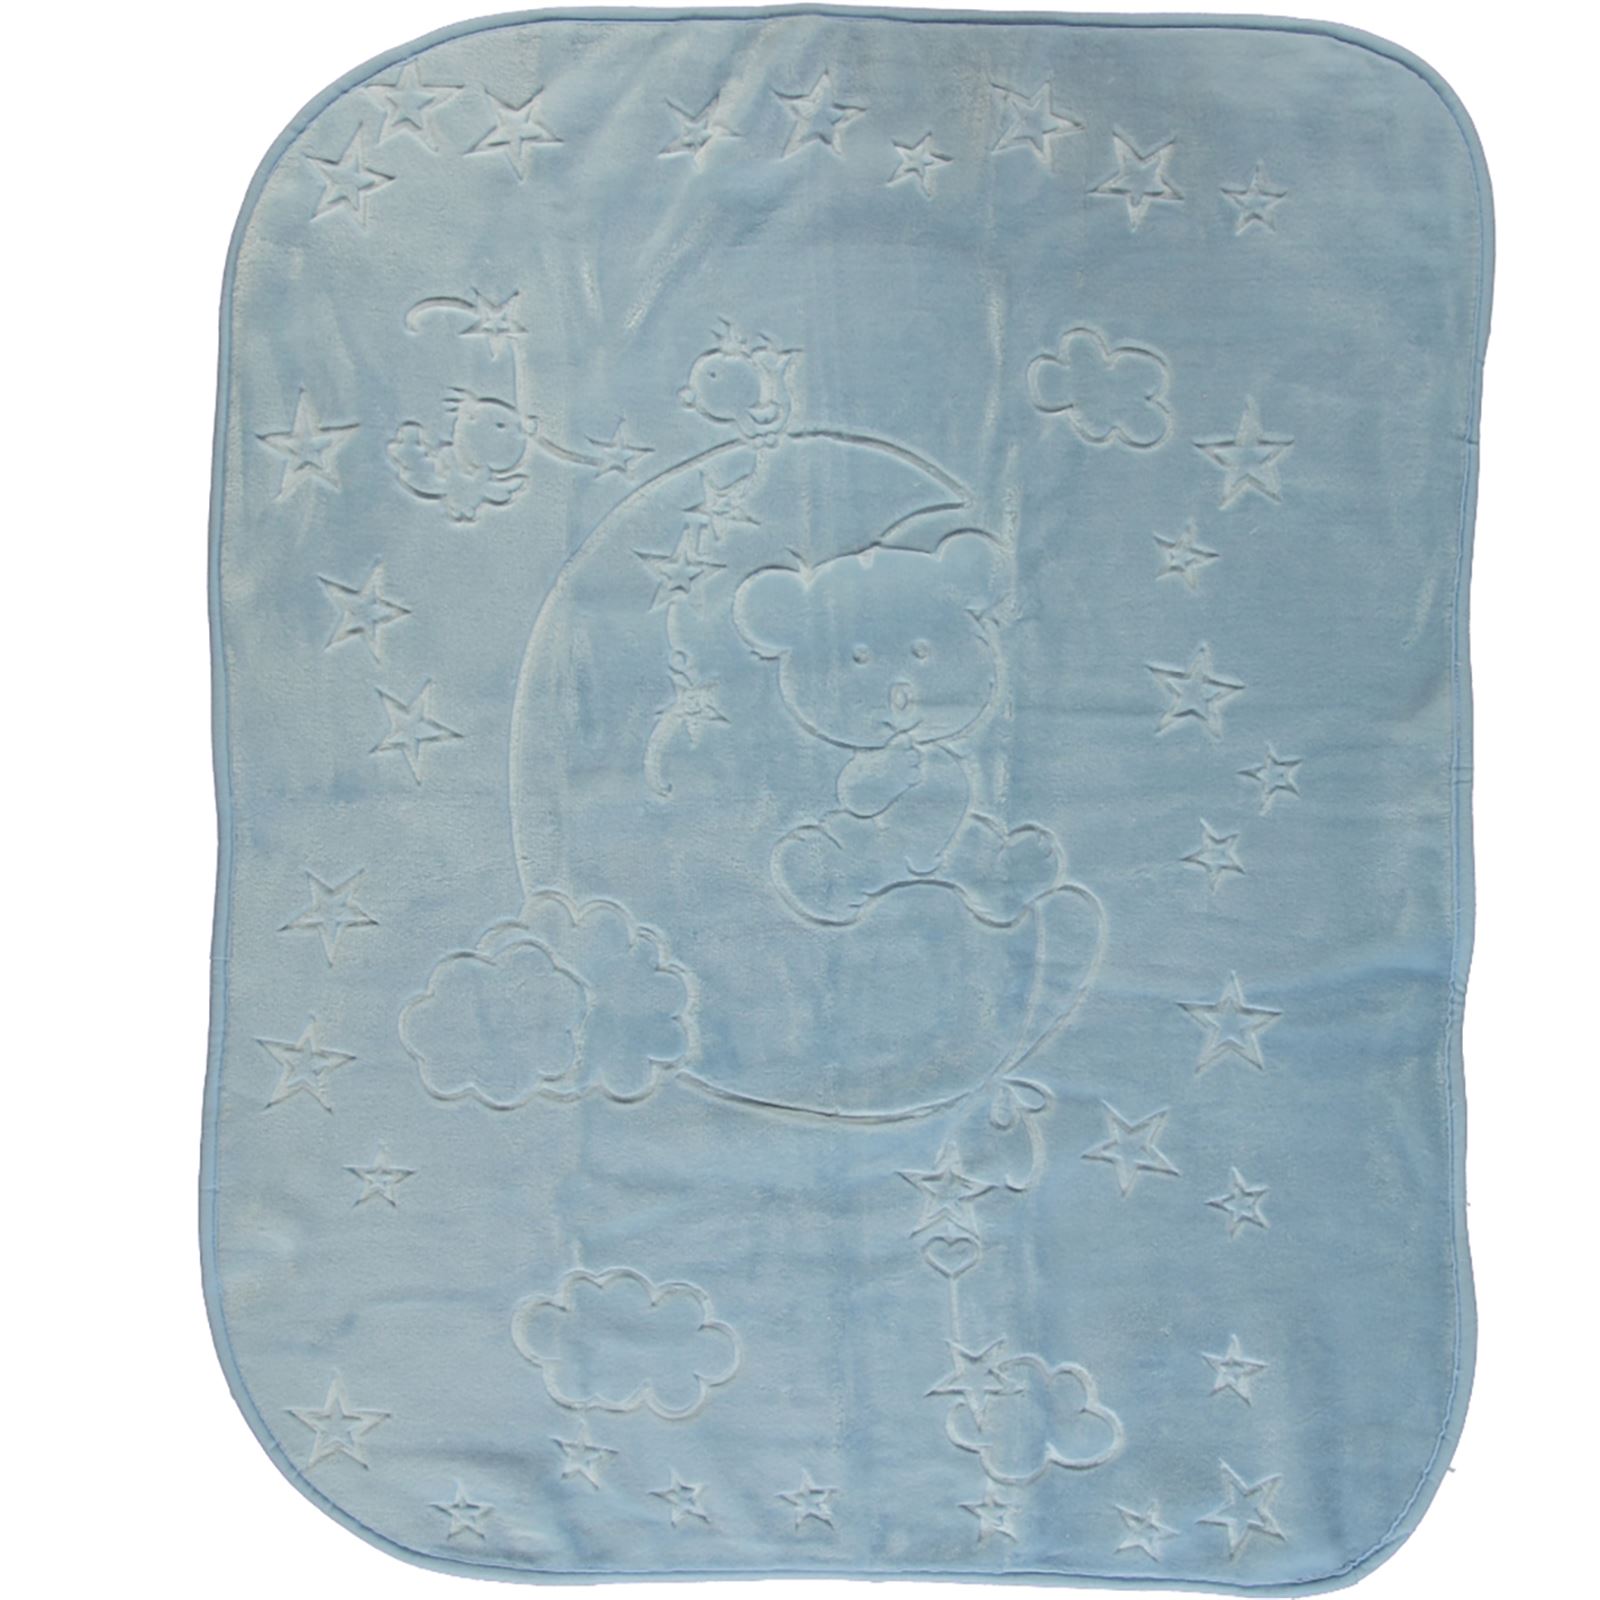 İlk Cemre Kabartmalı Peluş Battaniye 100x120 cm Mavi